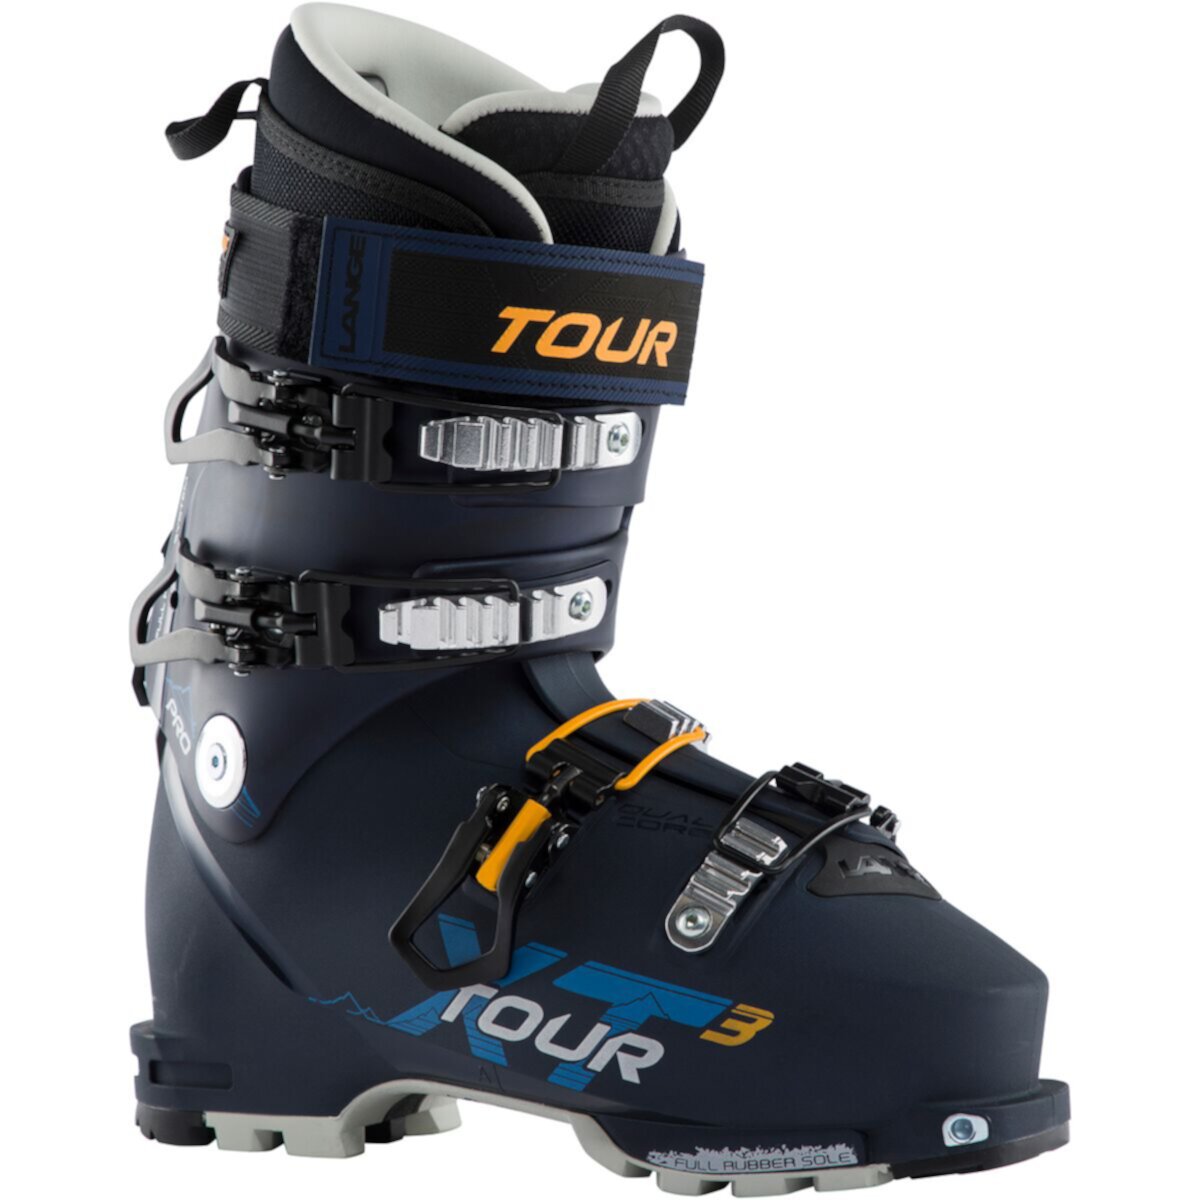 Ботинки для альпийского туризма XT3 TOUR Pro — 2023 г. Lange